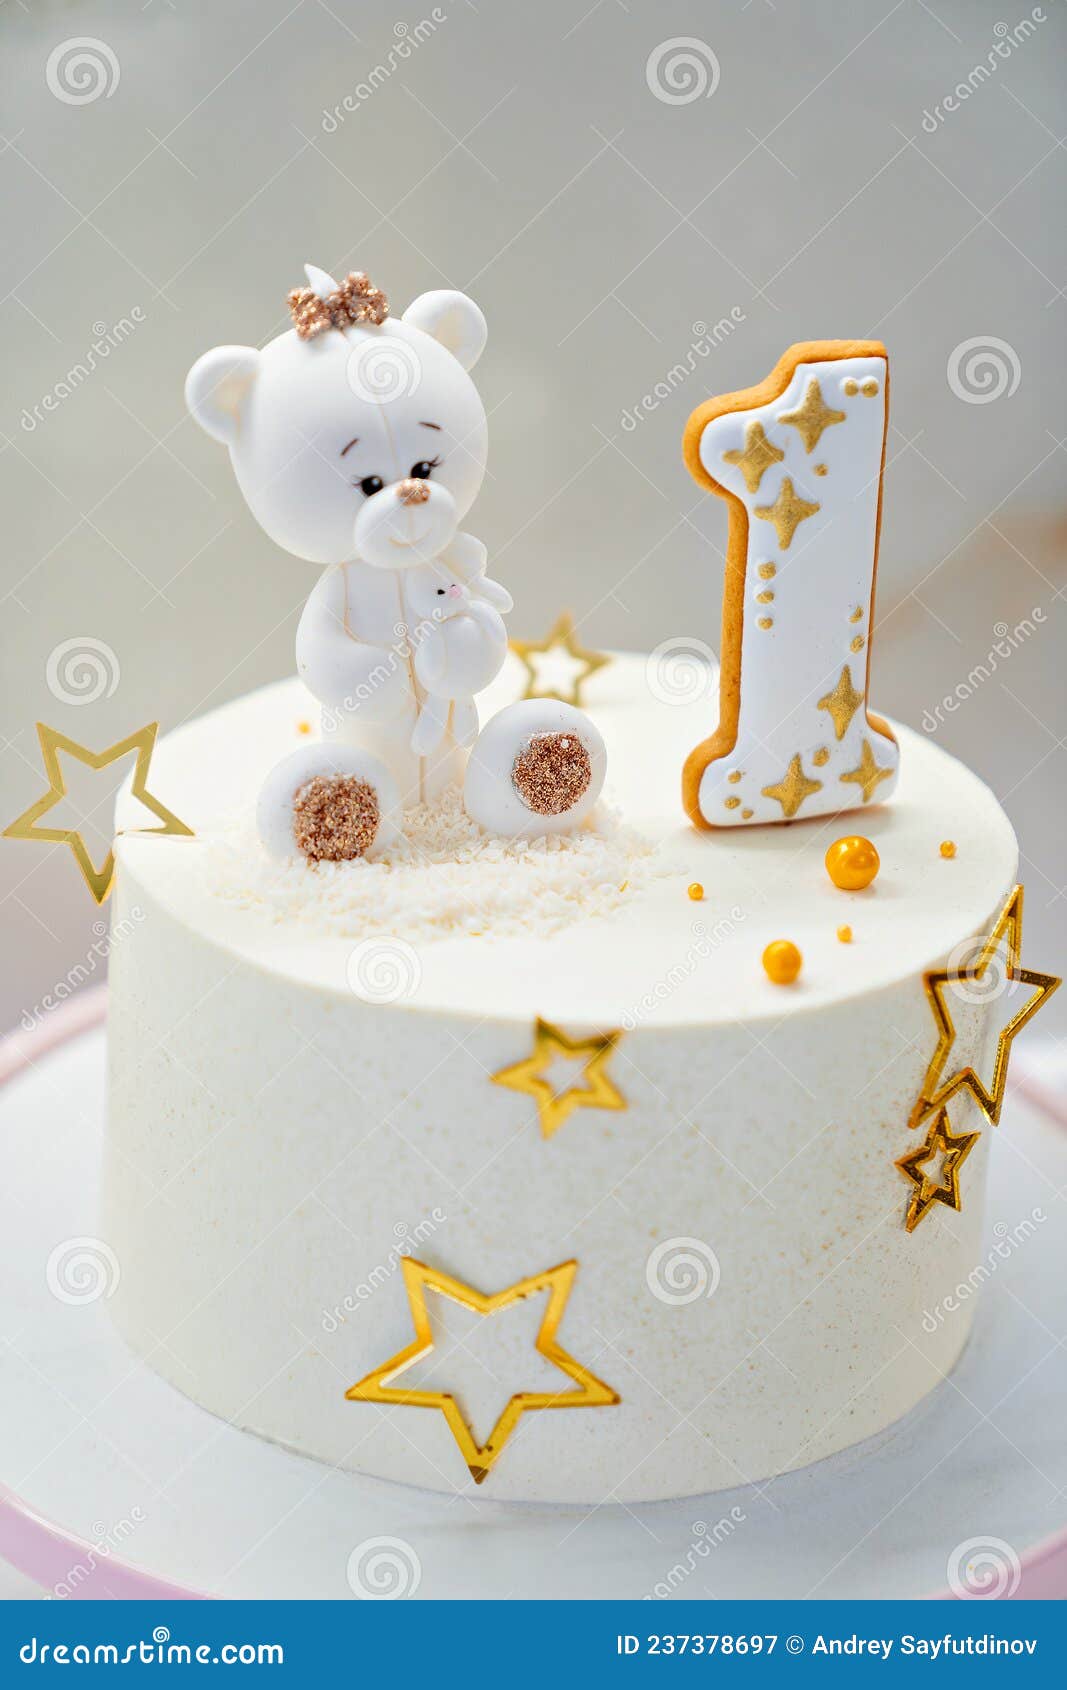 可爱泰迪熊玩偶蛋糕模板免费下载_psd格式_650像素_编号40979046-千图网